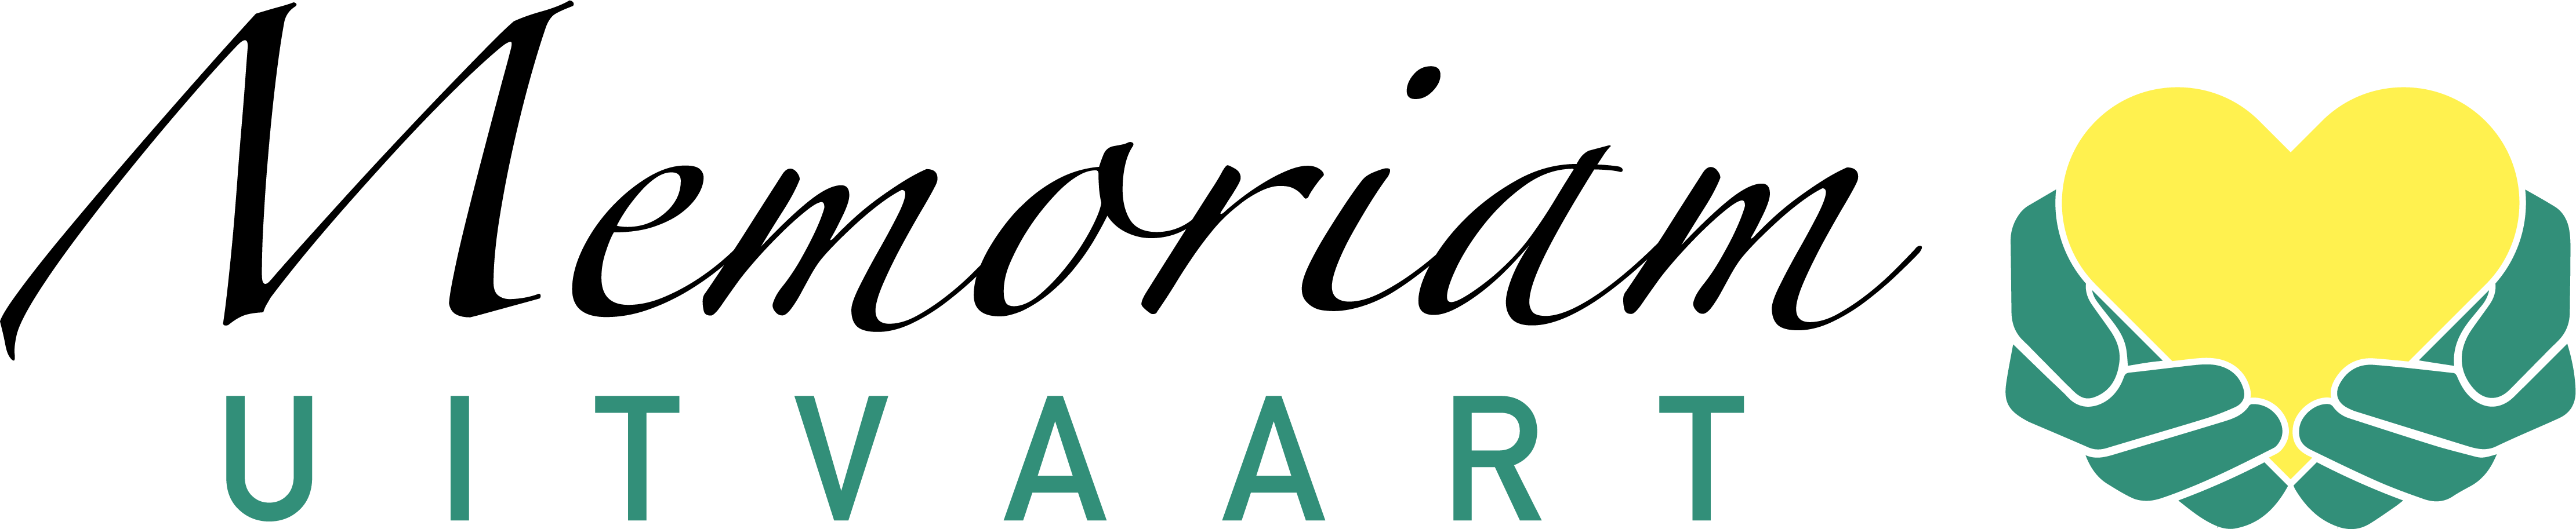 Memoriam Uitvaart logo